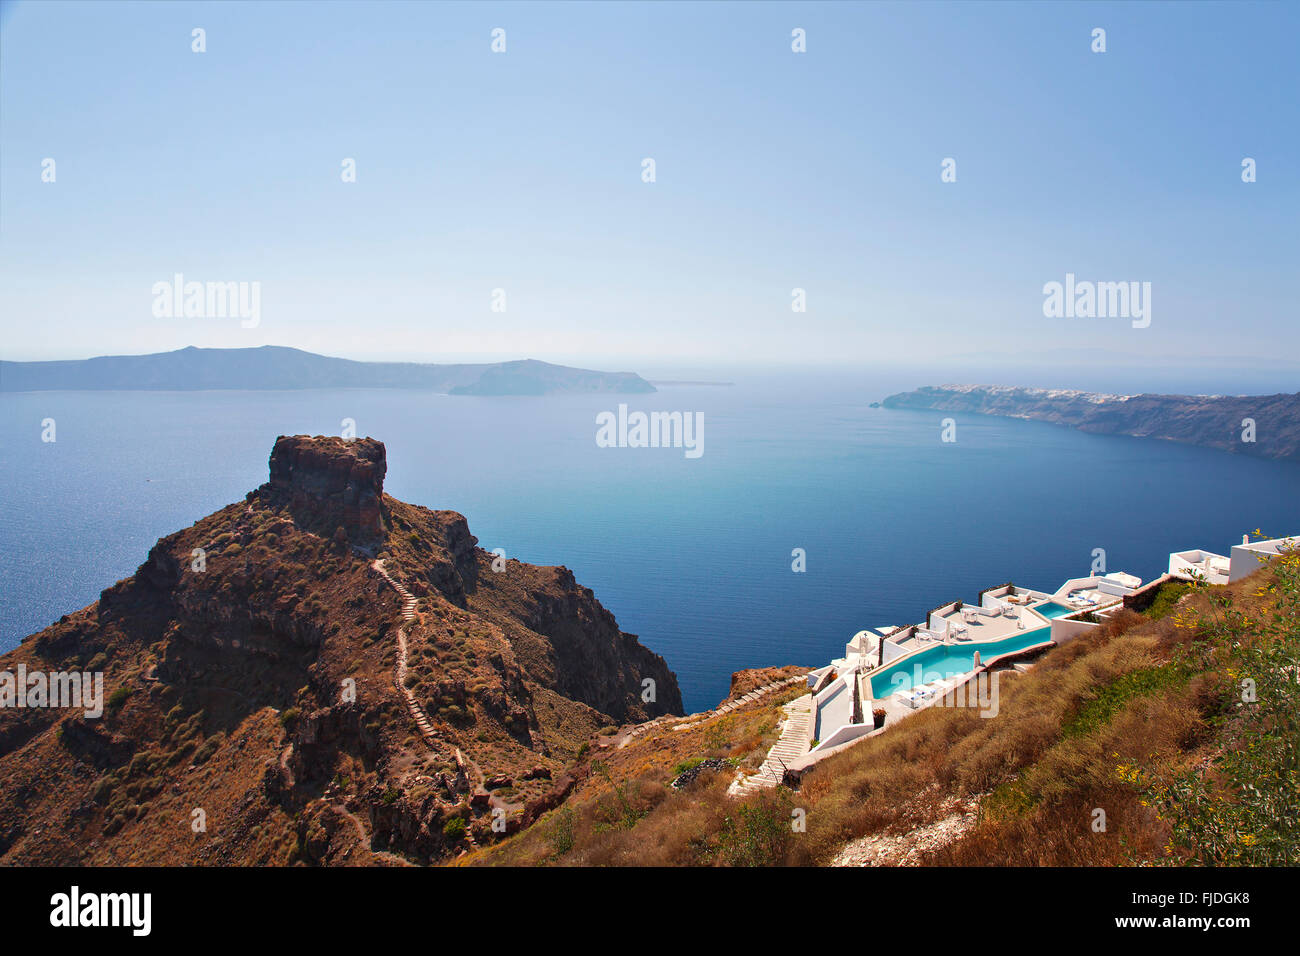 Droit de l'île de Santorin et la Skaros rock, la Grèce. Banque D'Images